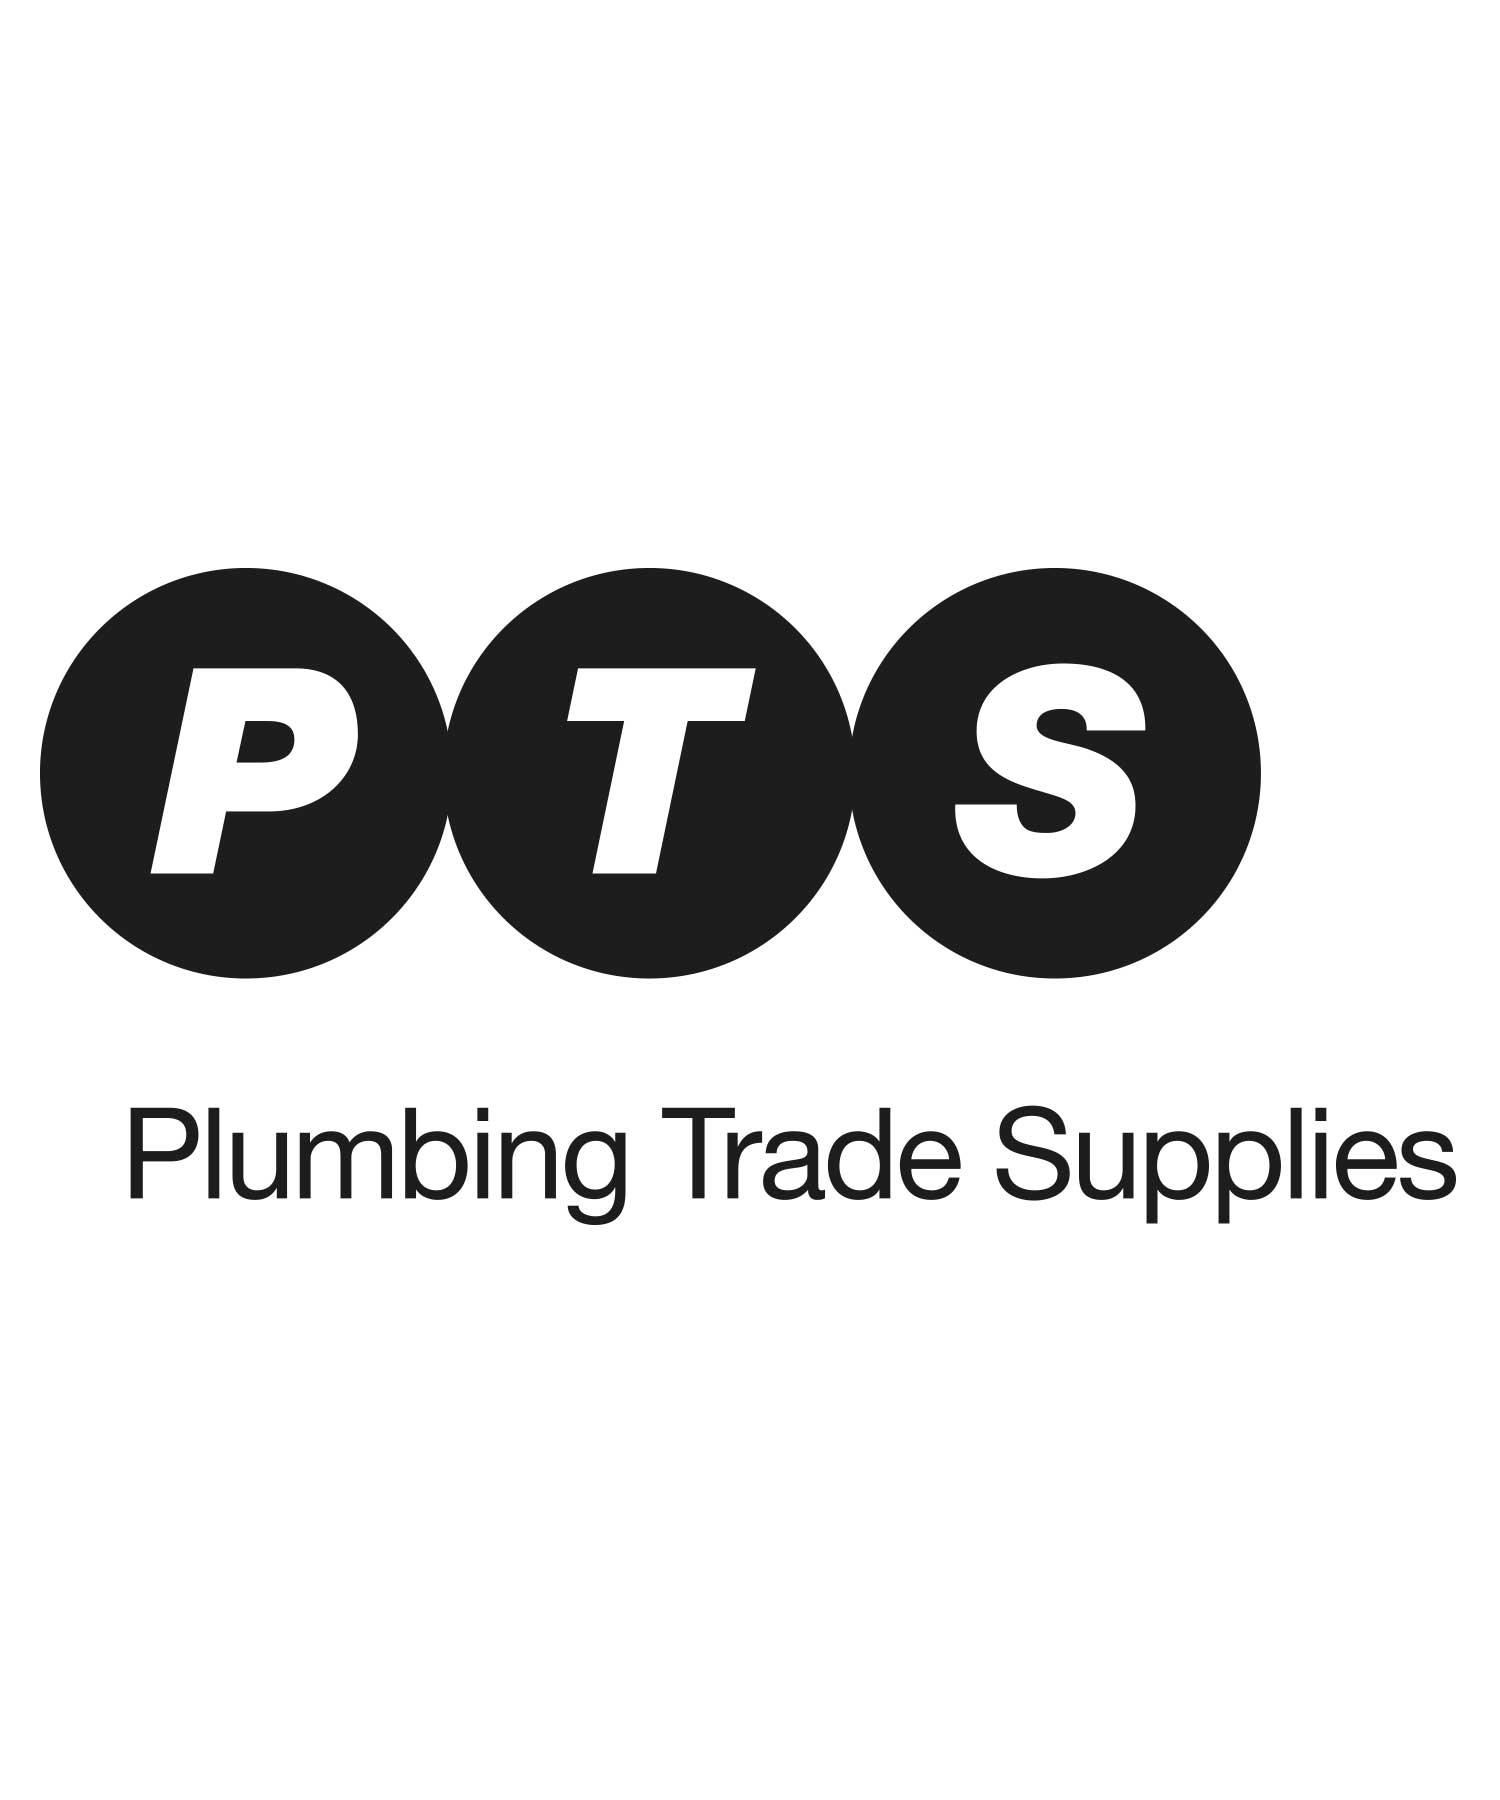 Plumbing Trade Supplies